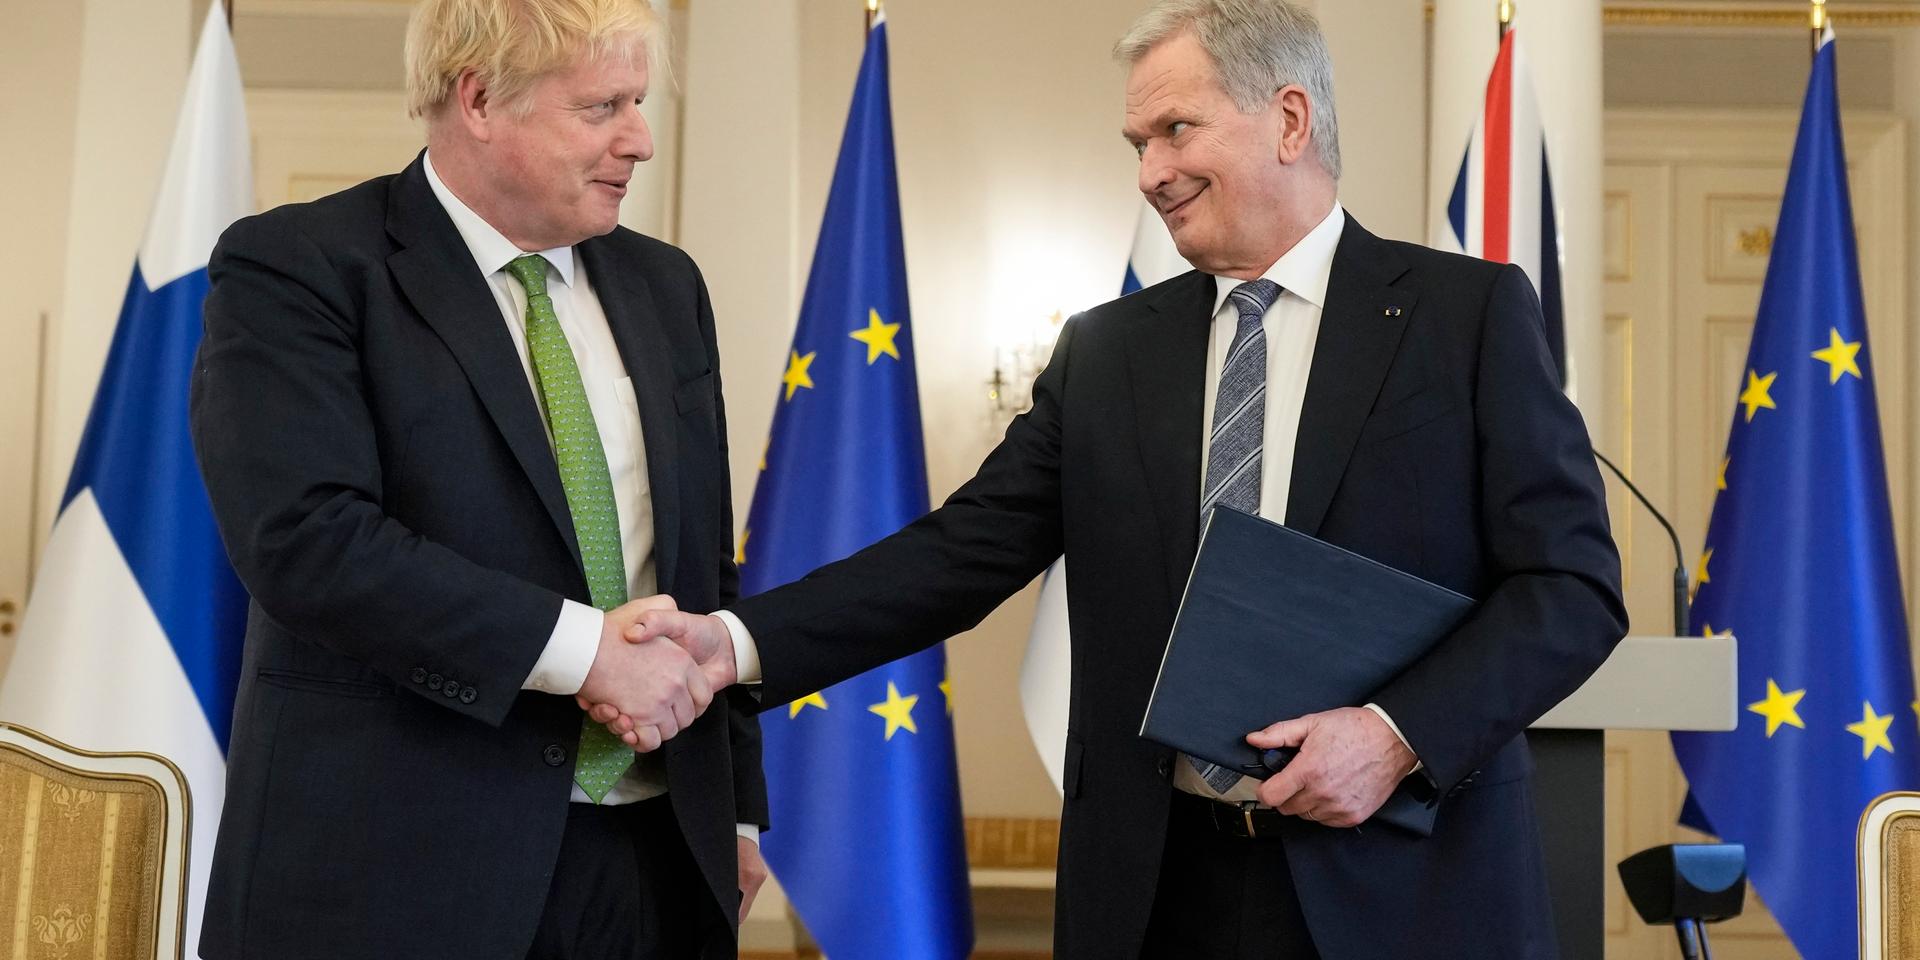 Storbritanniens premiärminister Boris Johnson skakar hand med Finlands president Sauli Niinistö efter undertecknandet av solidaritetsförklaringen mellan länderna.